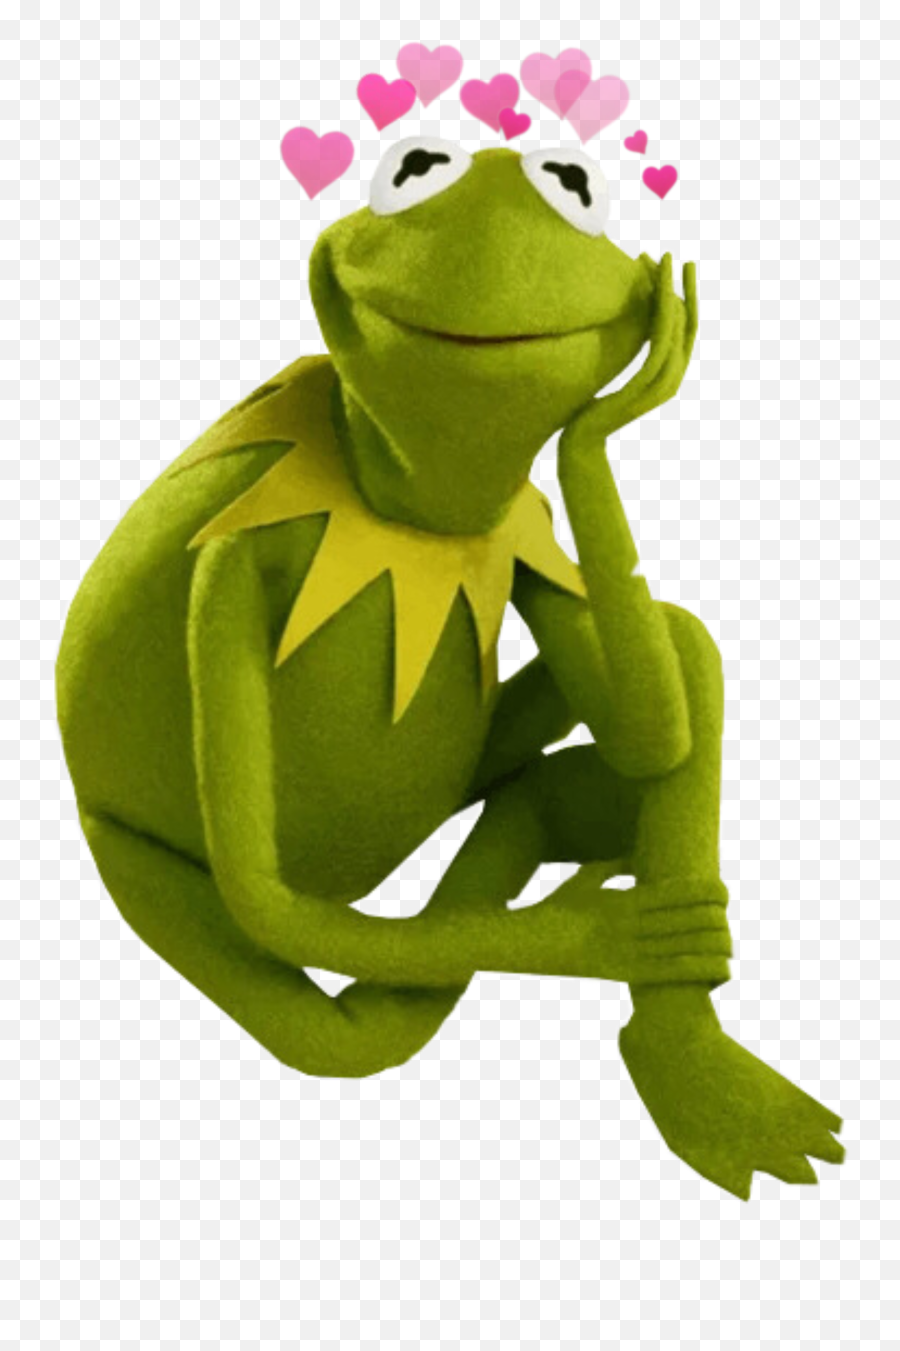 The Most Edited Kermit Picsart - Kermit Sitting And Thinking Emoji,Kermit Emojis